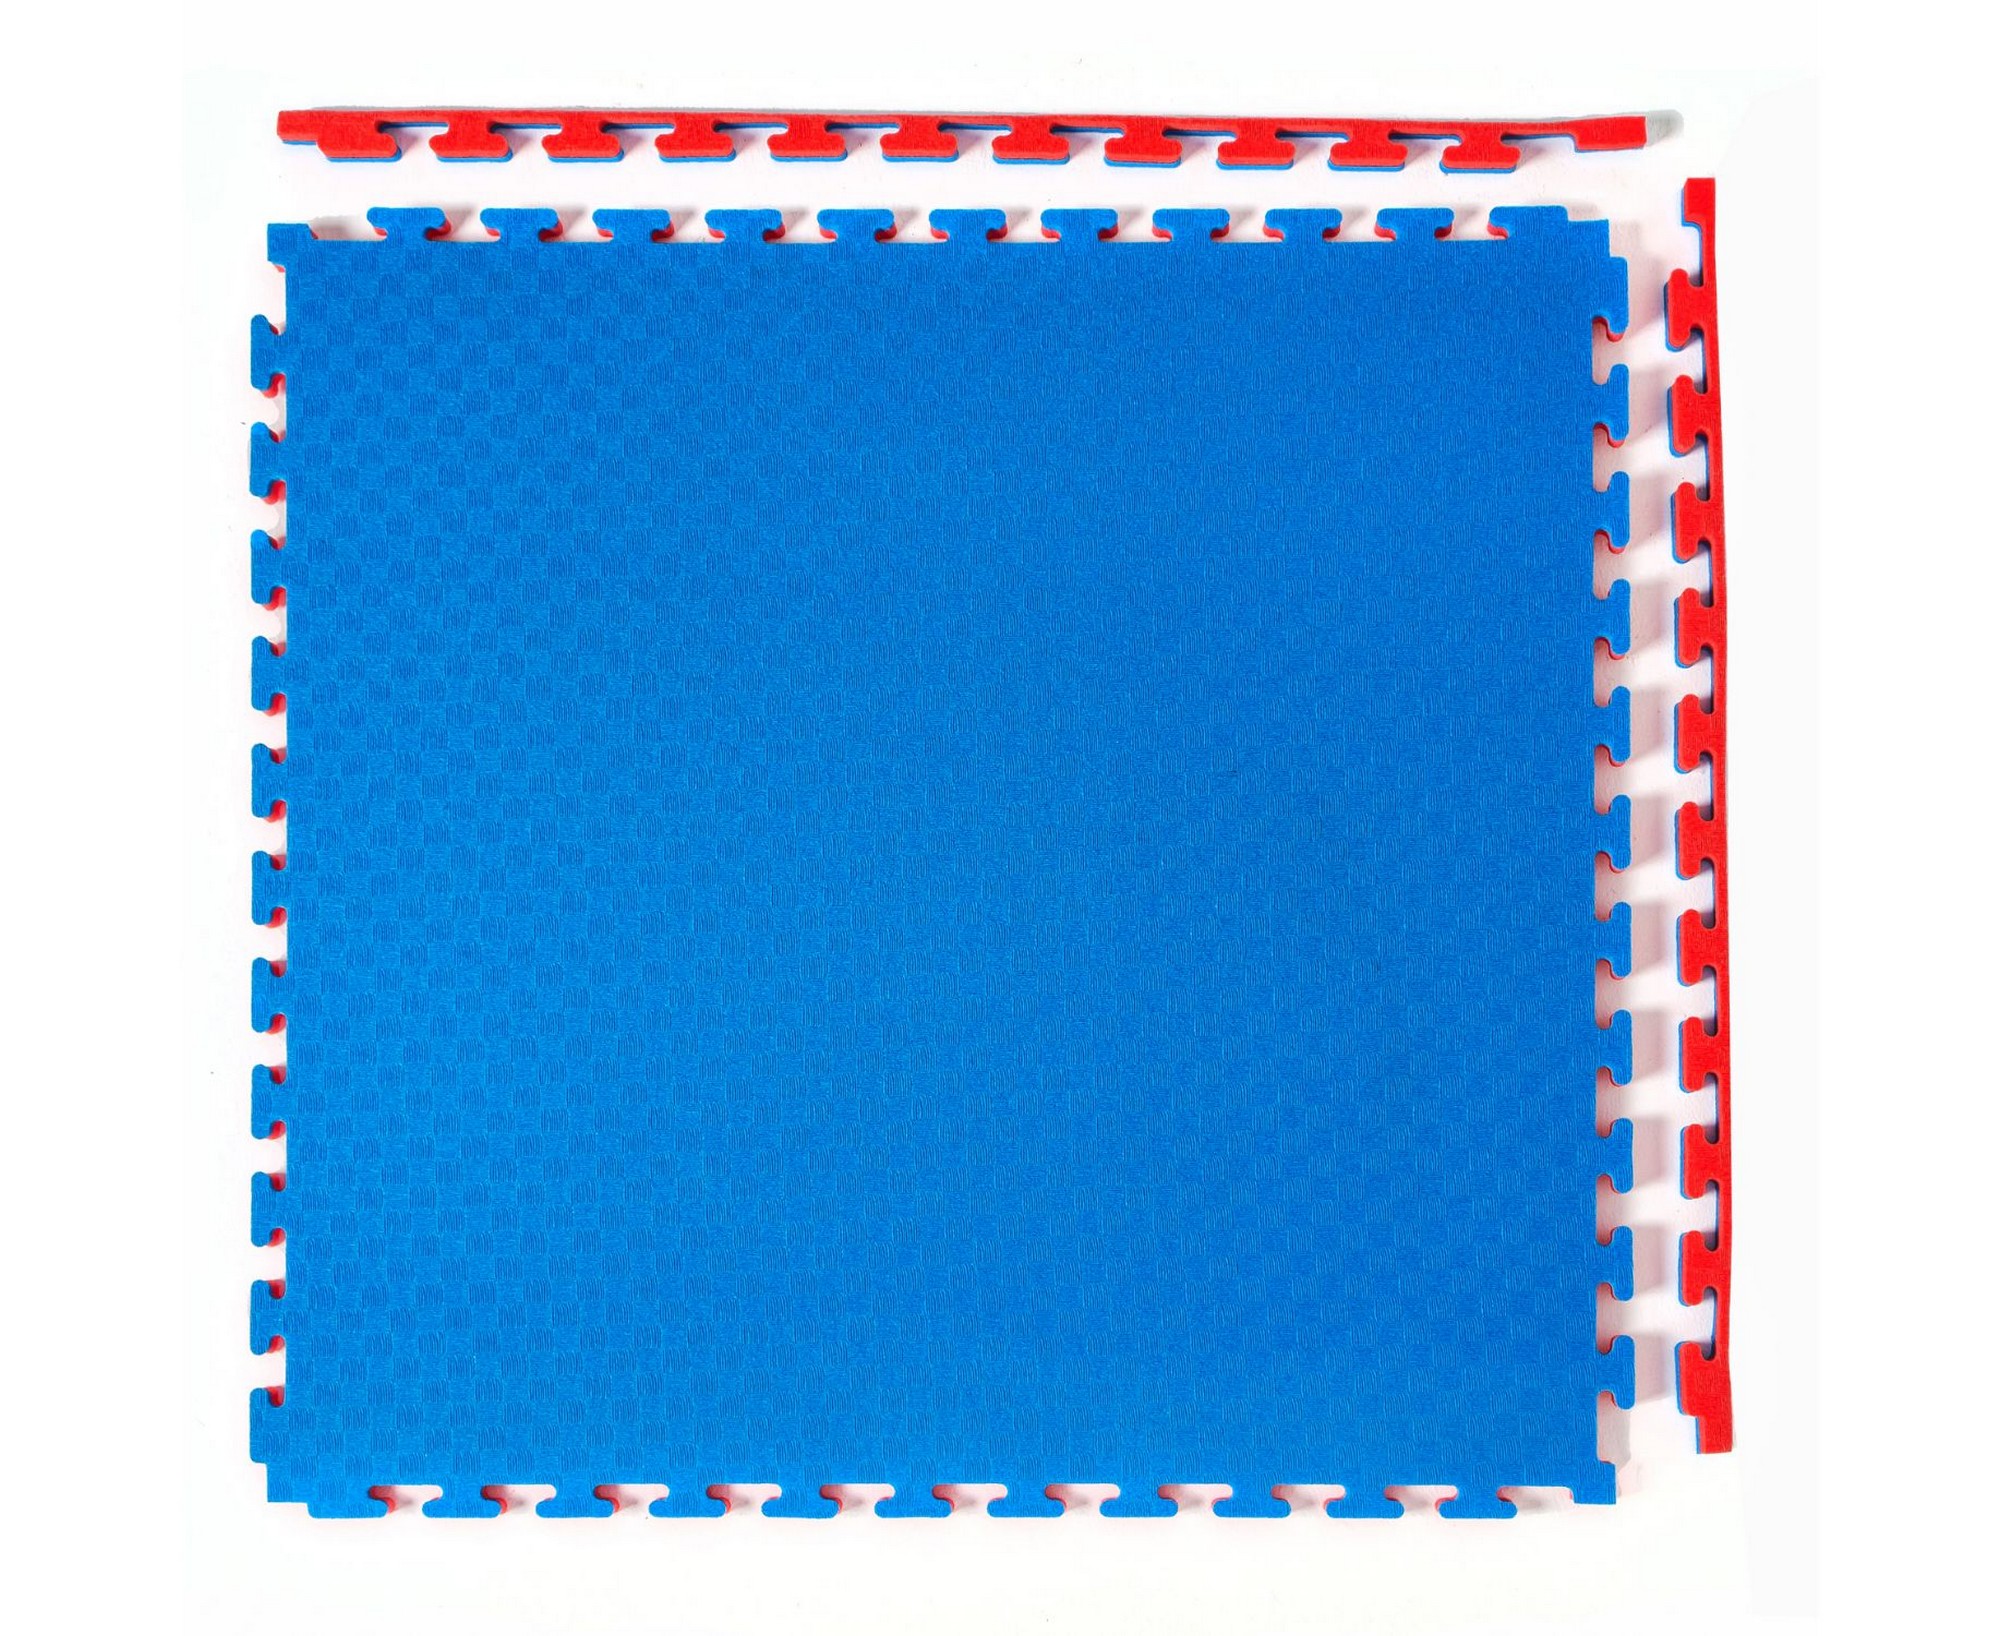 Будо-мат, 100x100 см, 40 мм DFC 12283 сине-красный 2000_1636